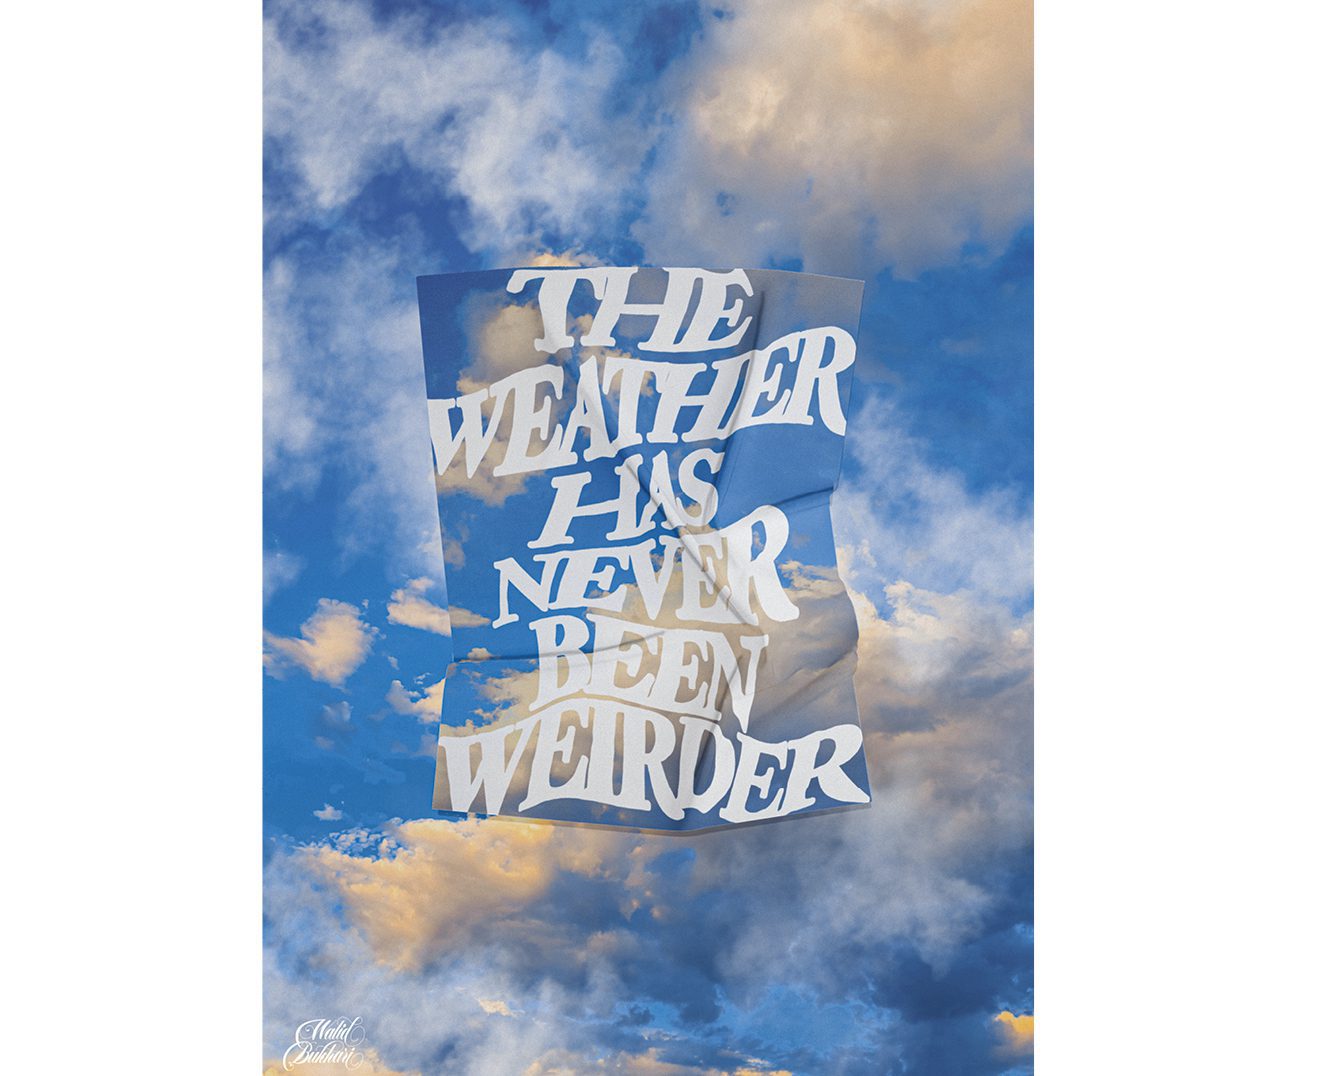 'The weather has never been weirder' (El tiempo nunca ha estado tan raro)